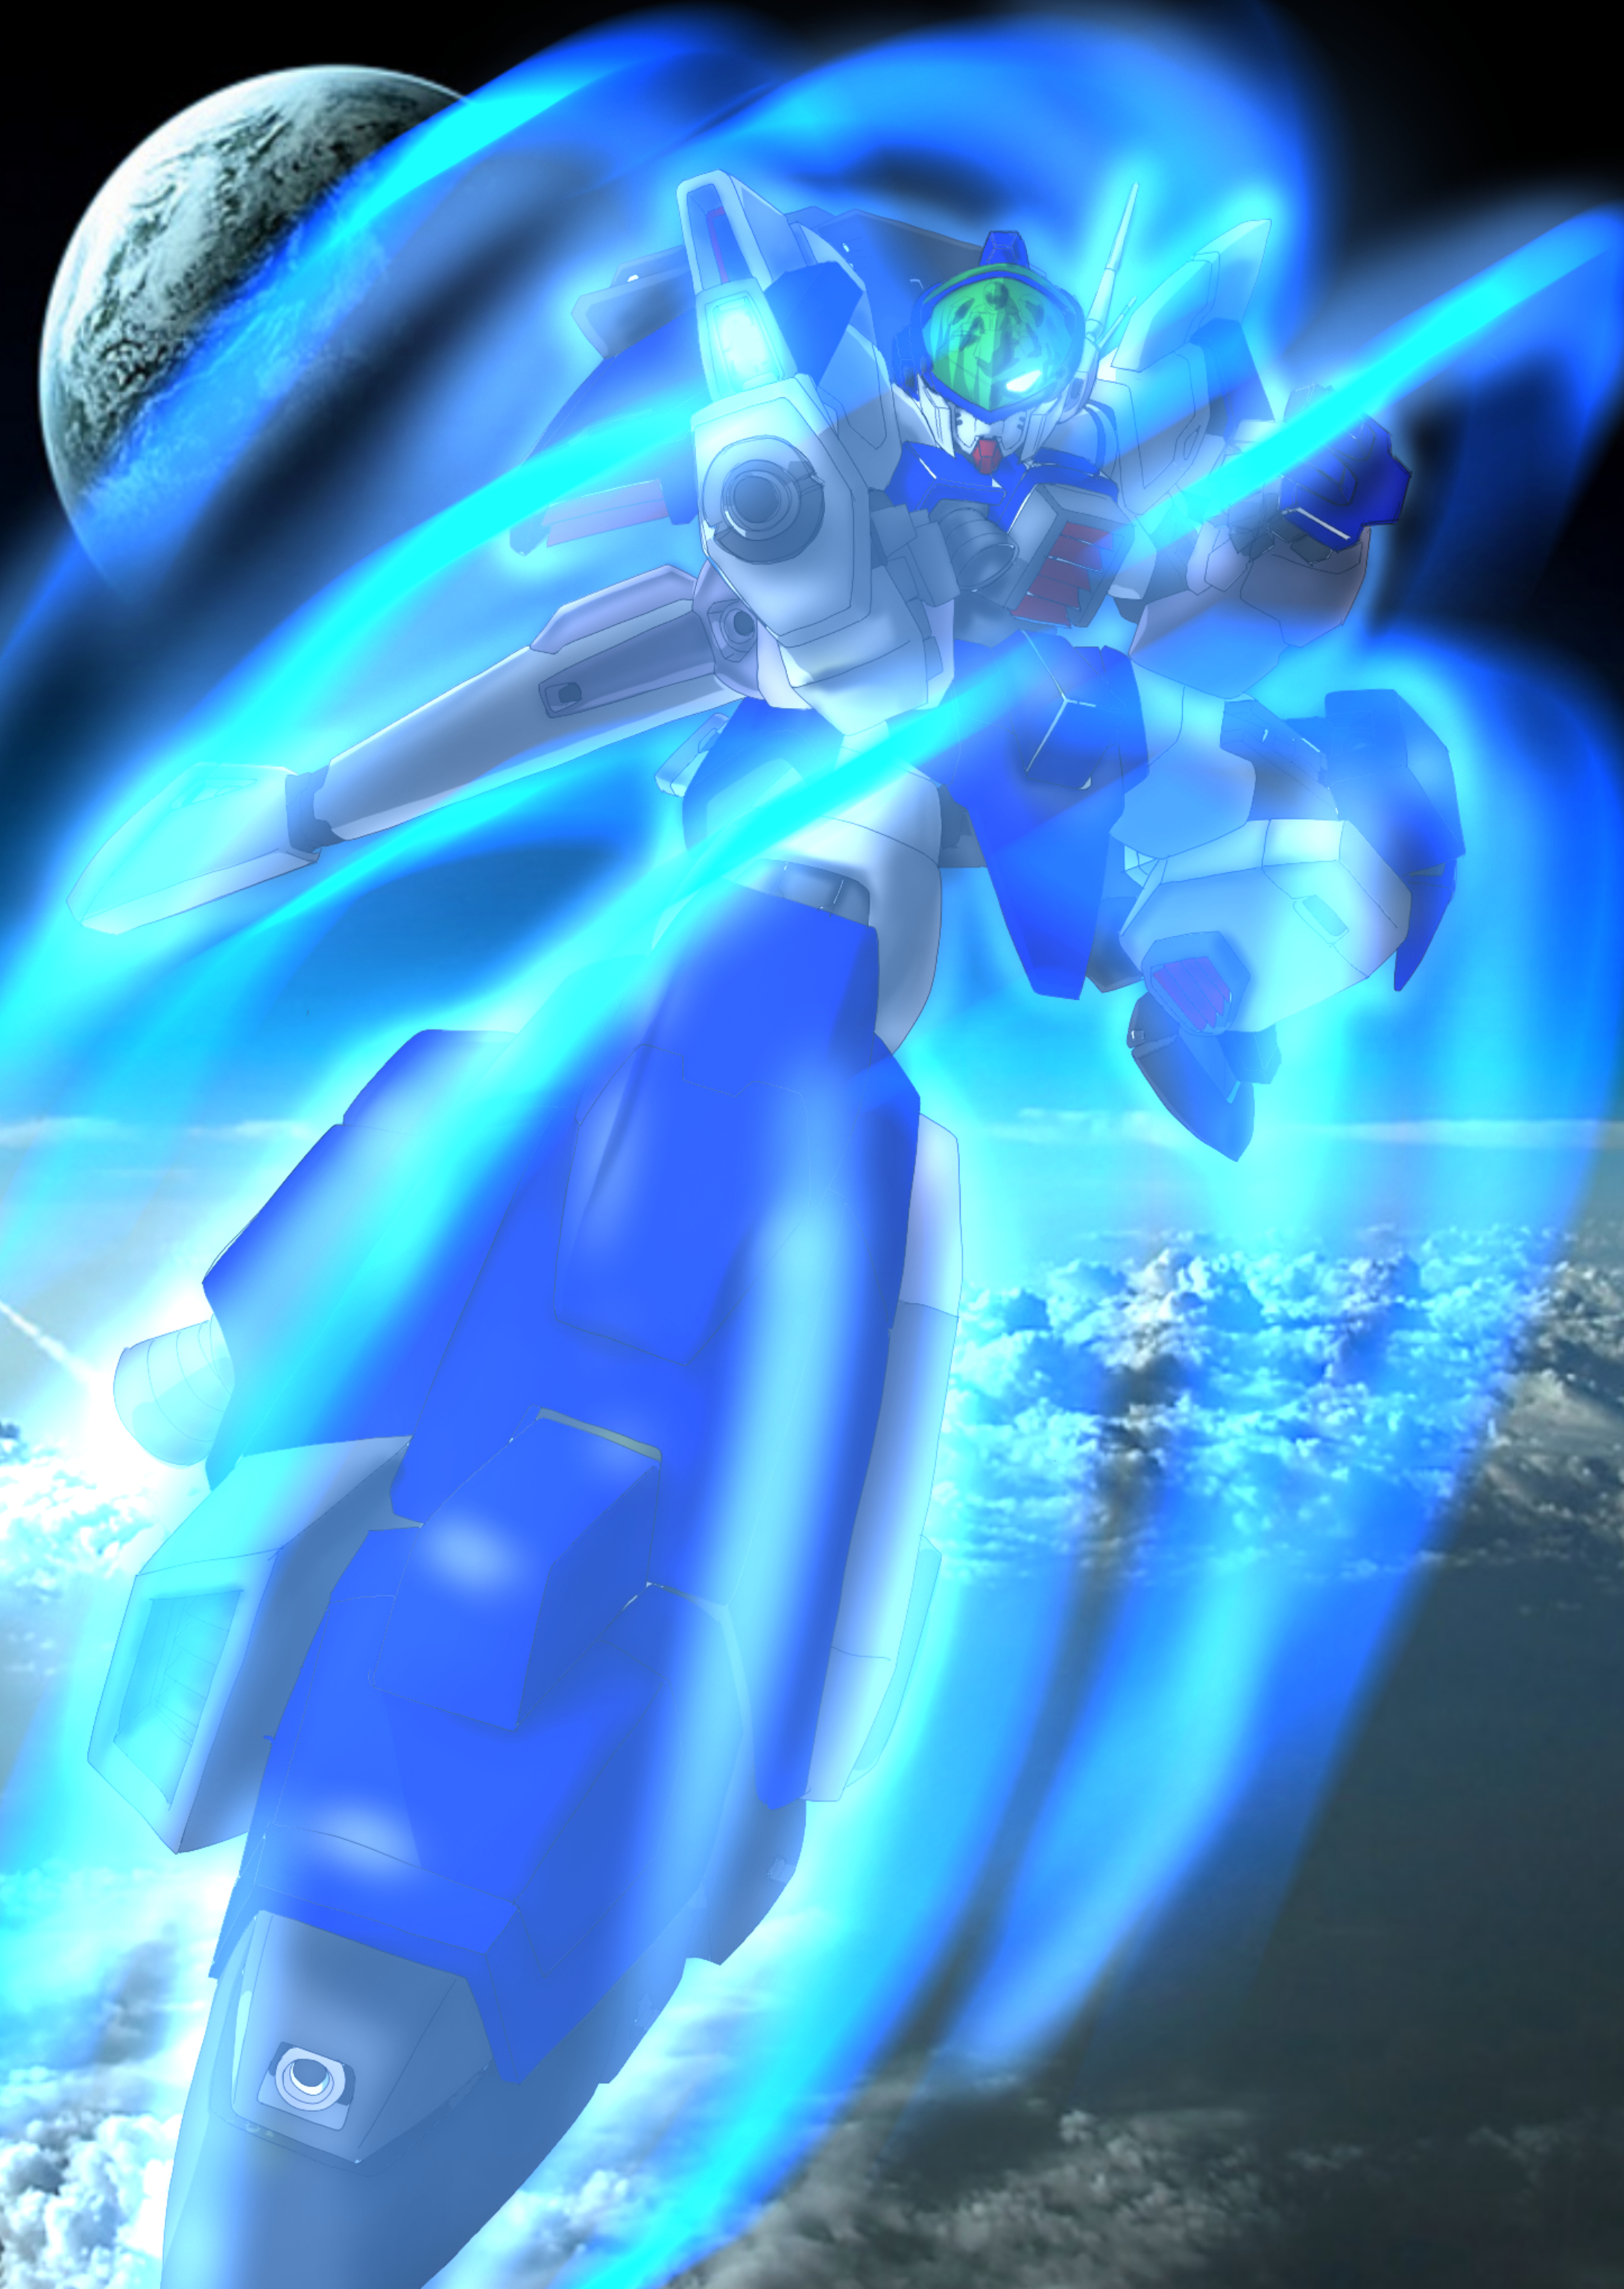 Anime 2179x3071 anime mechs Layzner Blue Meteor SPT Layzner Super Robot Taisen artwork digital art fan art